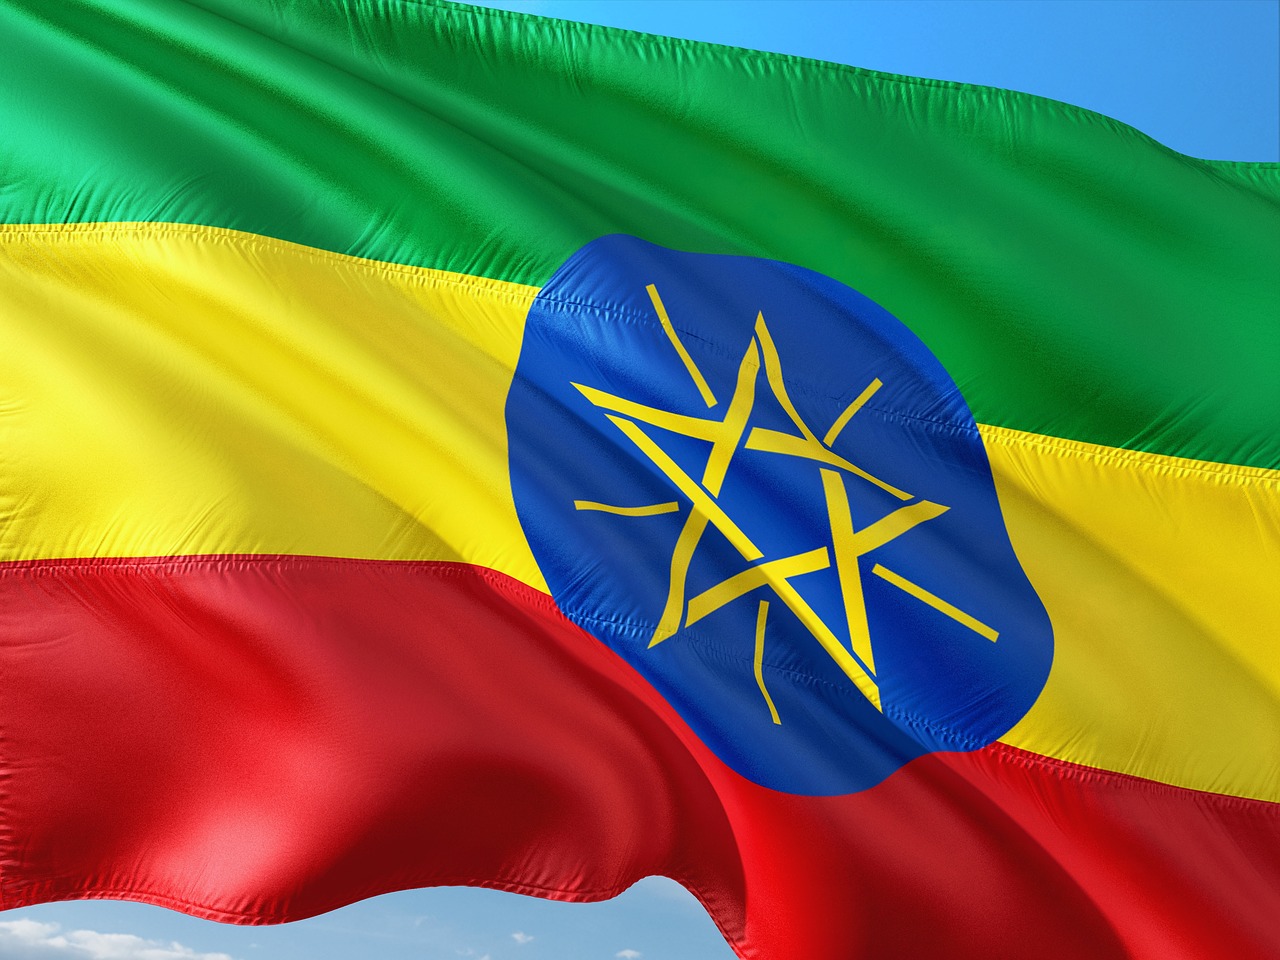 Chuyển phát nhanh Ethiopia: Nếu bạn muốn gửi gấp một món quà hay tài liệu quan trọng đến Ethiopia, hãy sử dụng dịch vụ chuyển phát nhanh an toàn và đáng tin cậy của chúng tôi. Với hơn 10 năm kinh nghiệm trong dịch vụ chuyển phát nhanh quốc tế, chúng tôi đảm bảo sẽ vận chuyển tới đích một cách nhanh chóng và an toàn, giúp bạn hoàn thành công việc một cách dễ dàng.